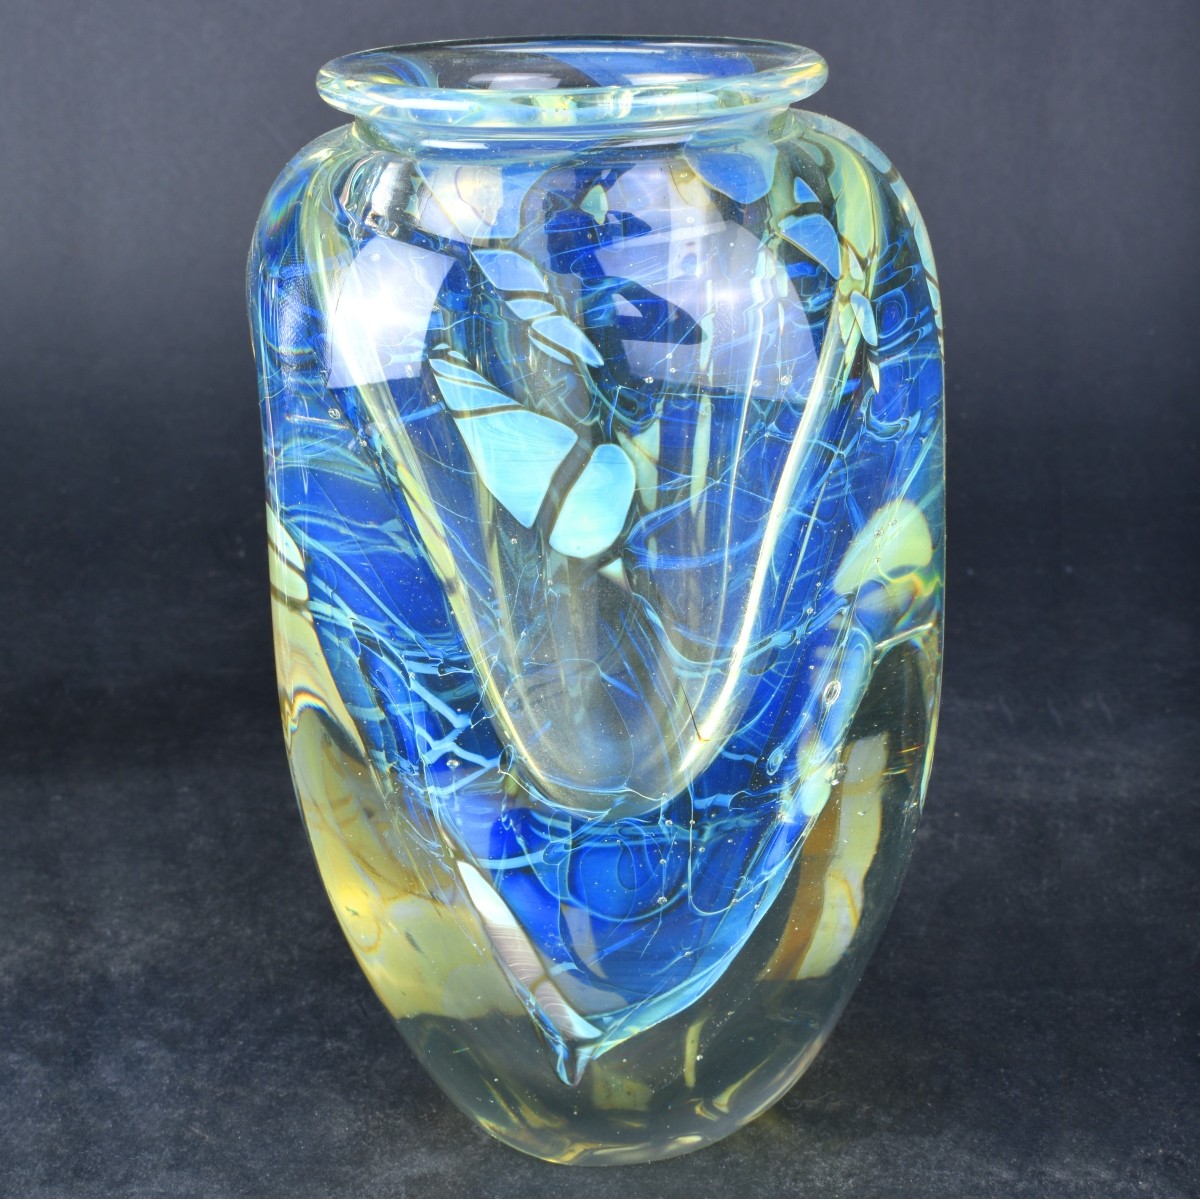 Five (5) Eickholt Art Glass Objects